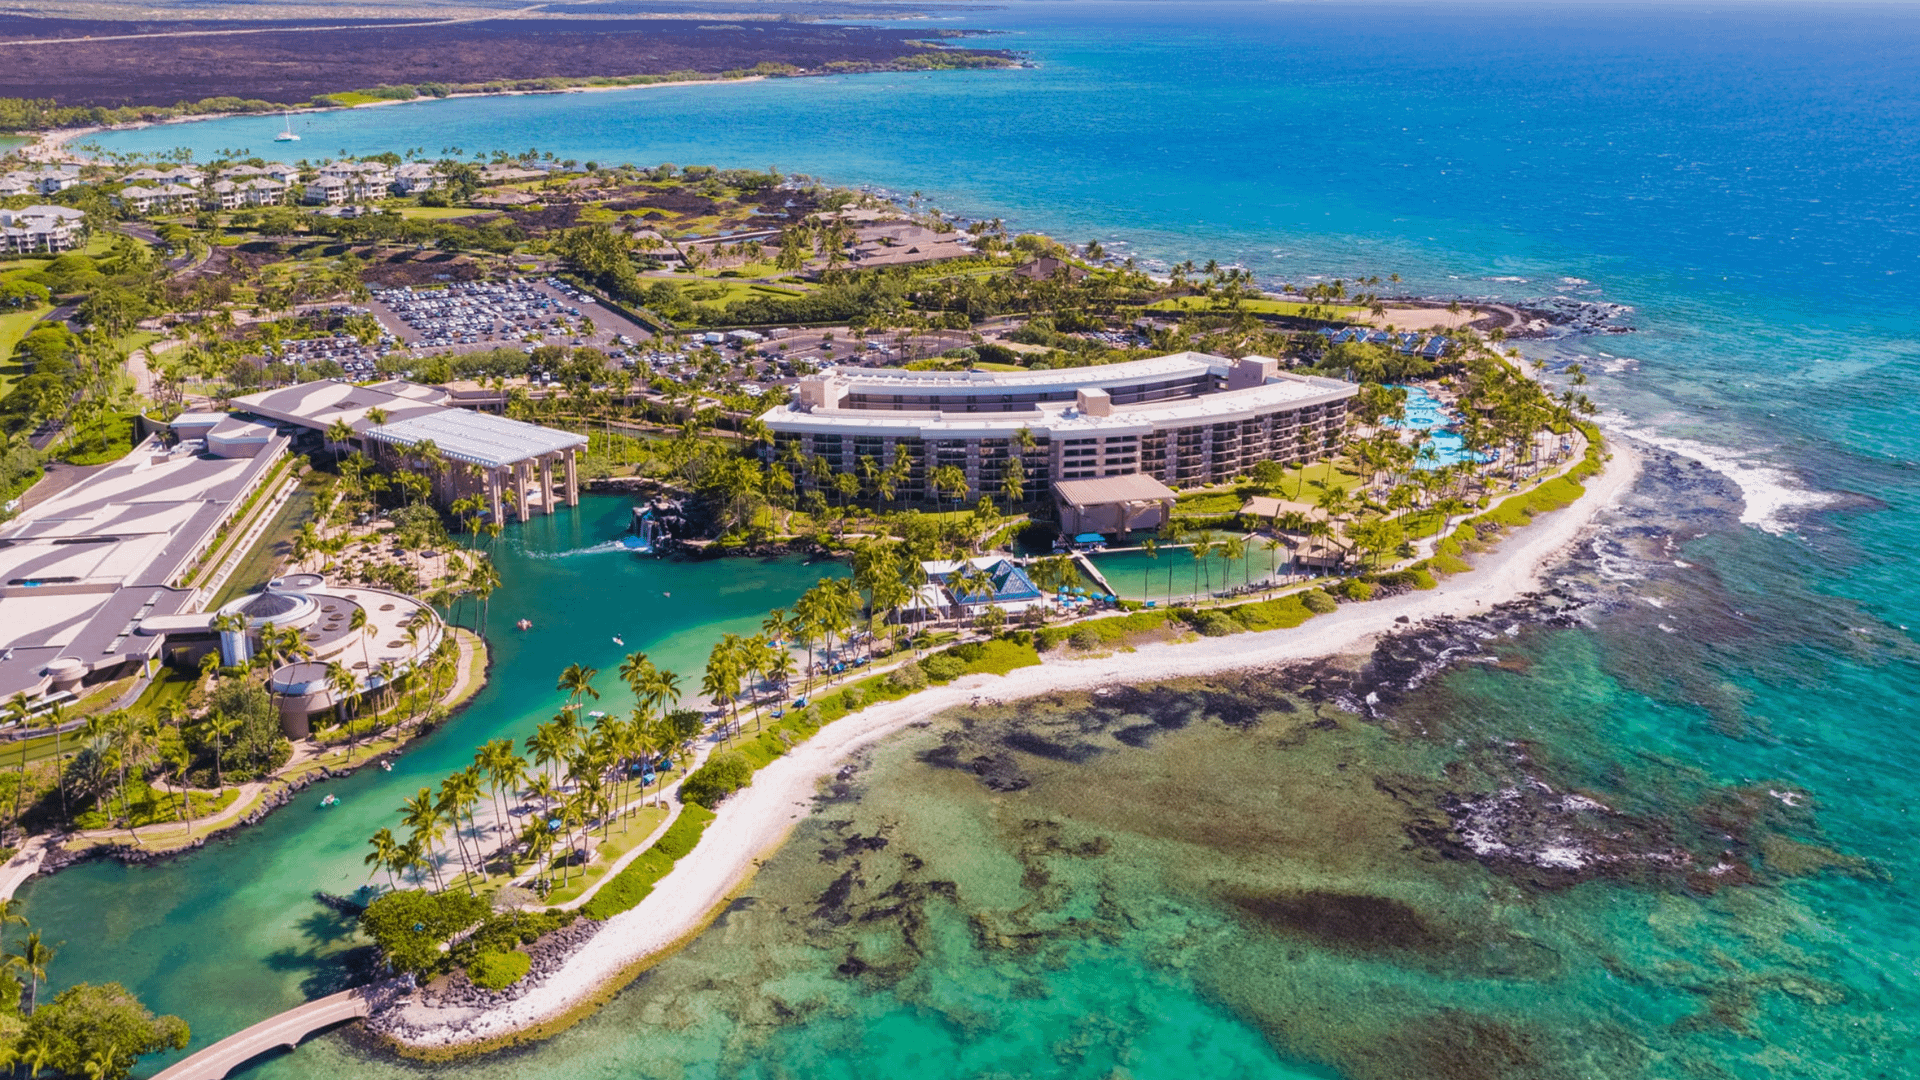 The Hilton Waikoloa Village Big Island